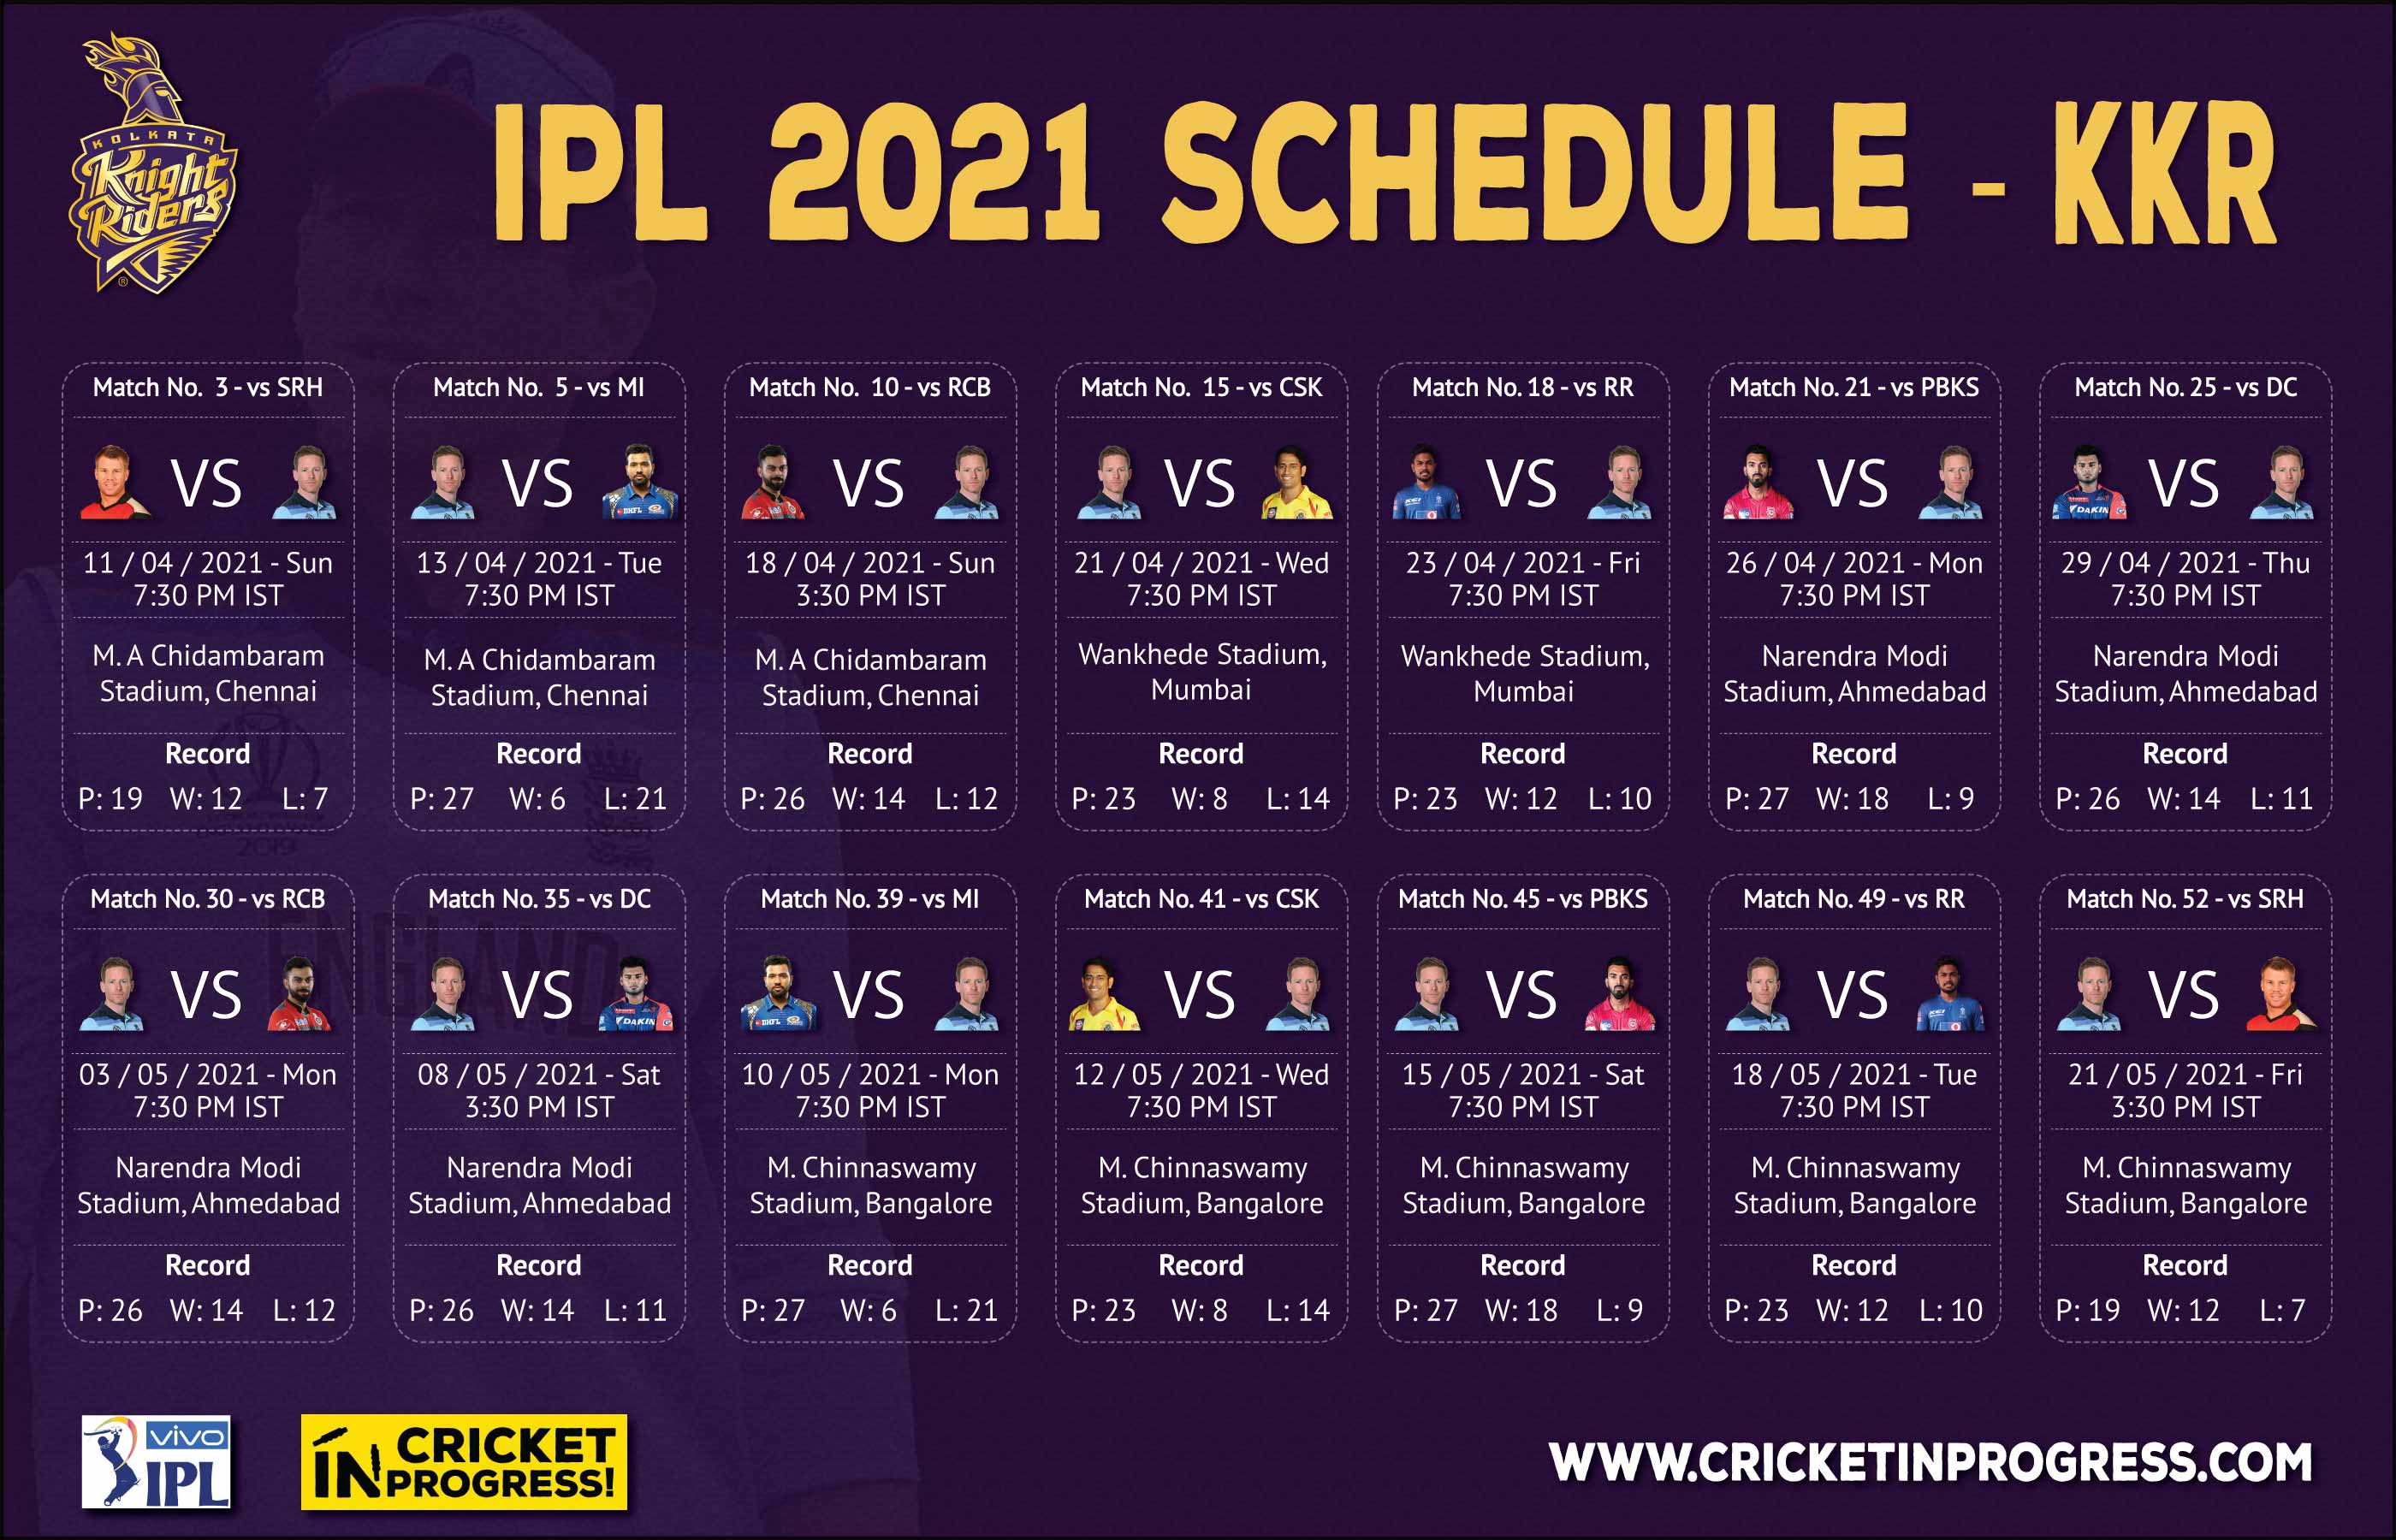 IPL 2021 KKR Schedule